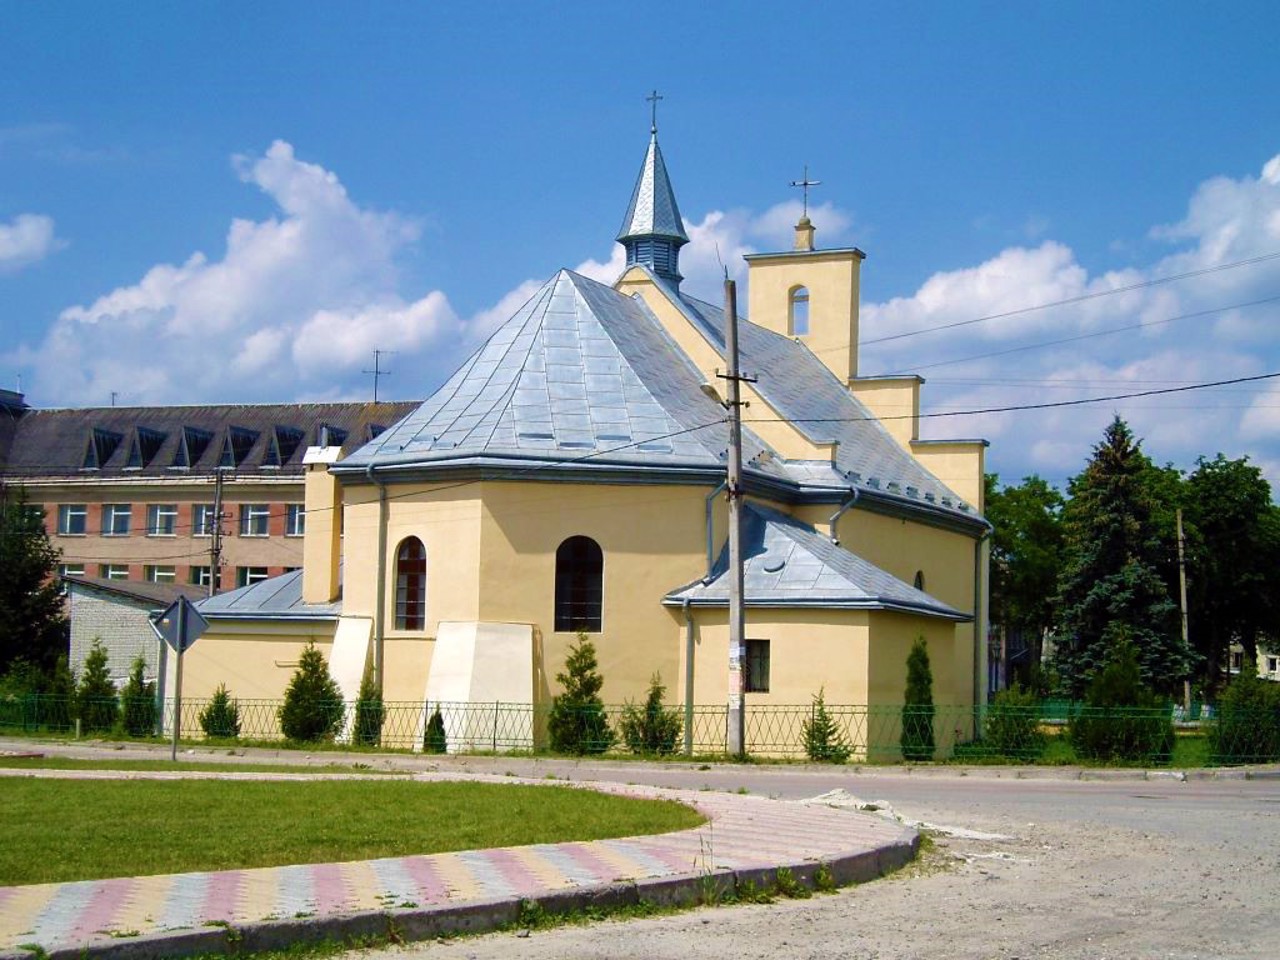 Mykolaiv city, Lviv region